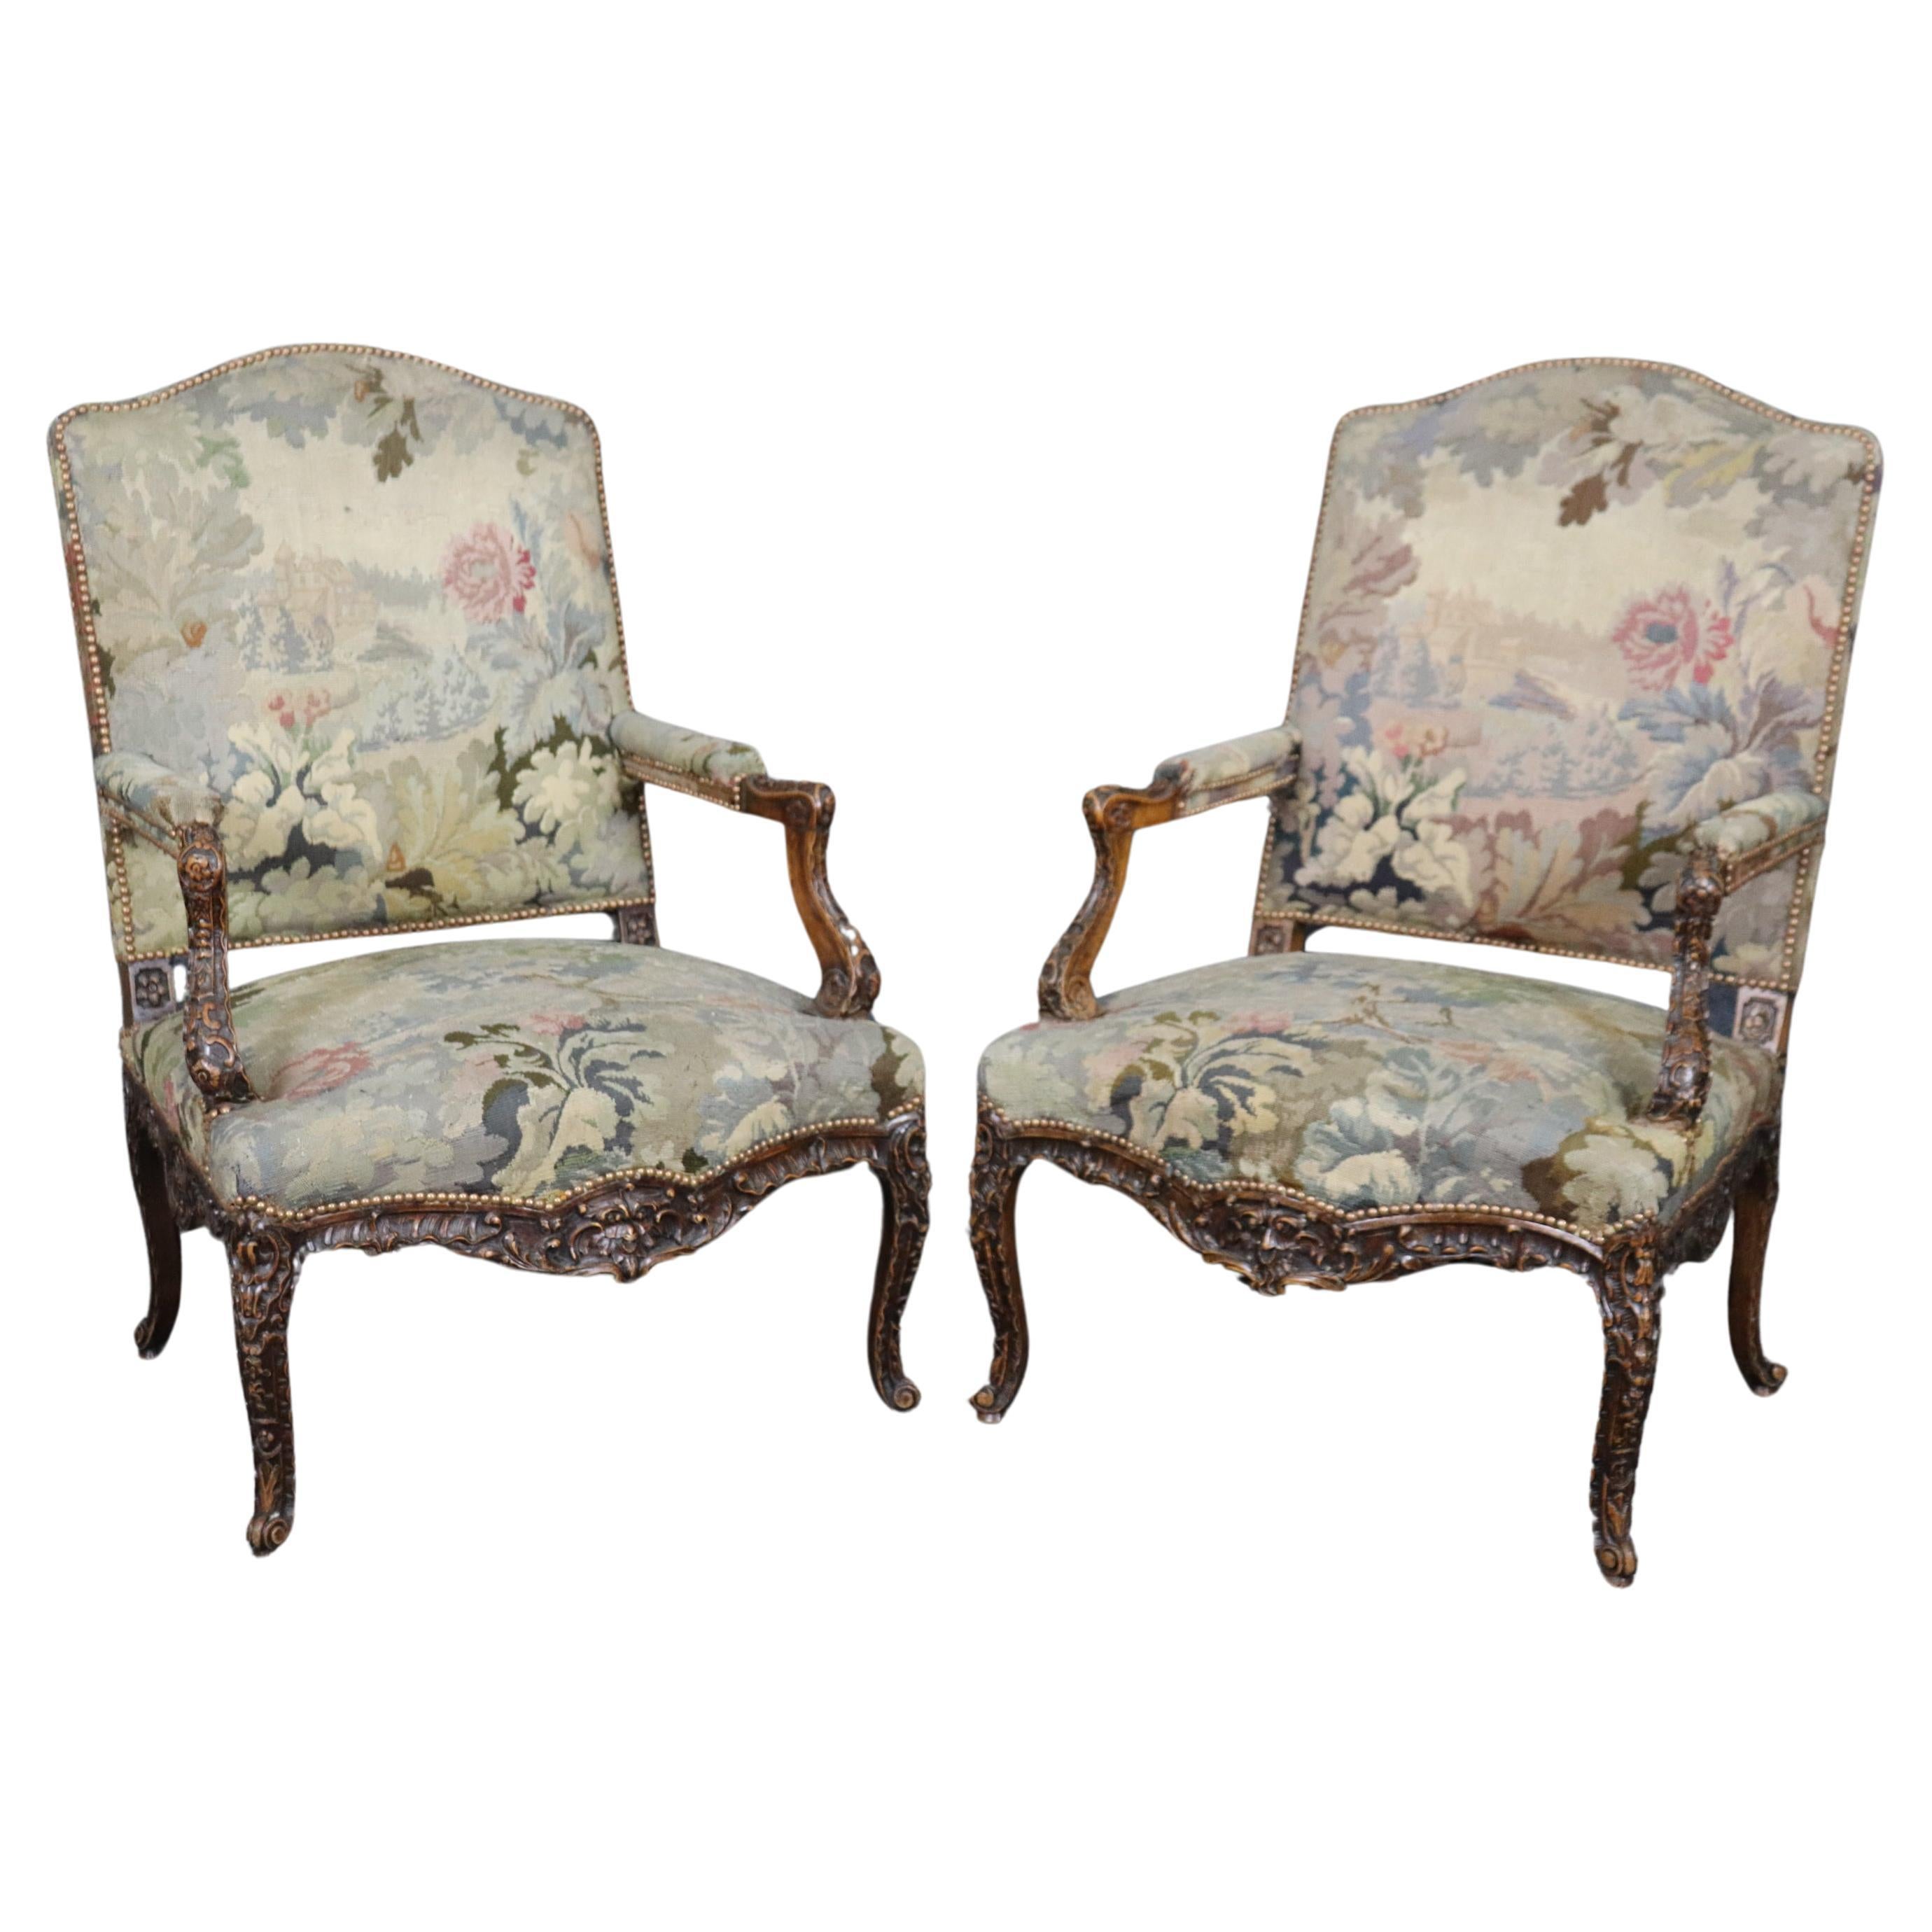 Superbe paire d'importants fauteuils de style Régence française sculptés, datant des années 1850 environ  en vente